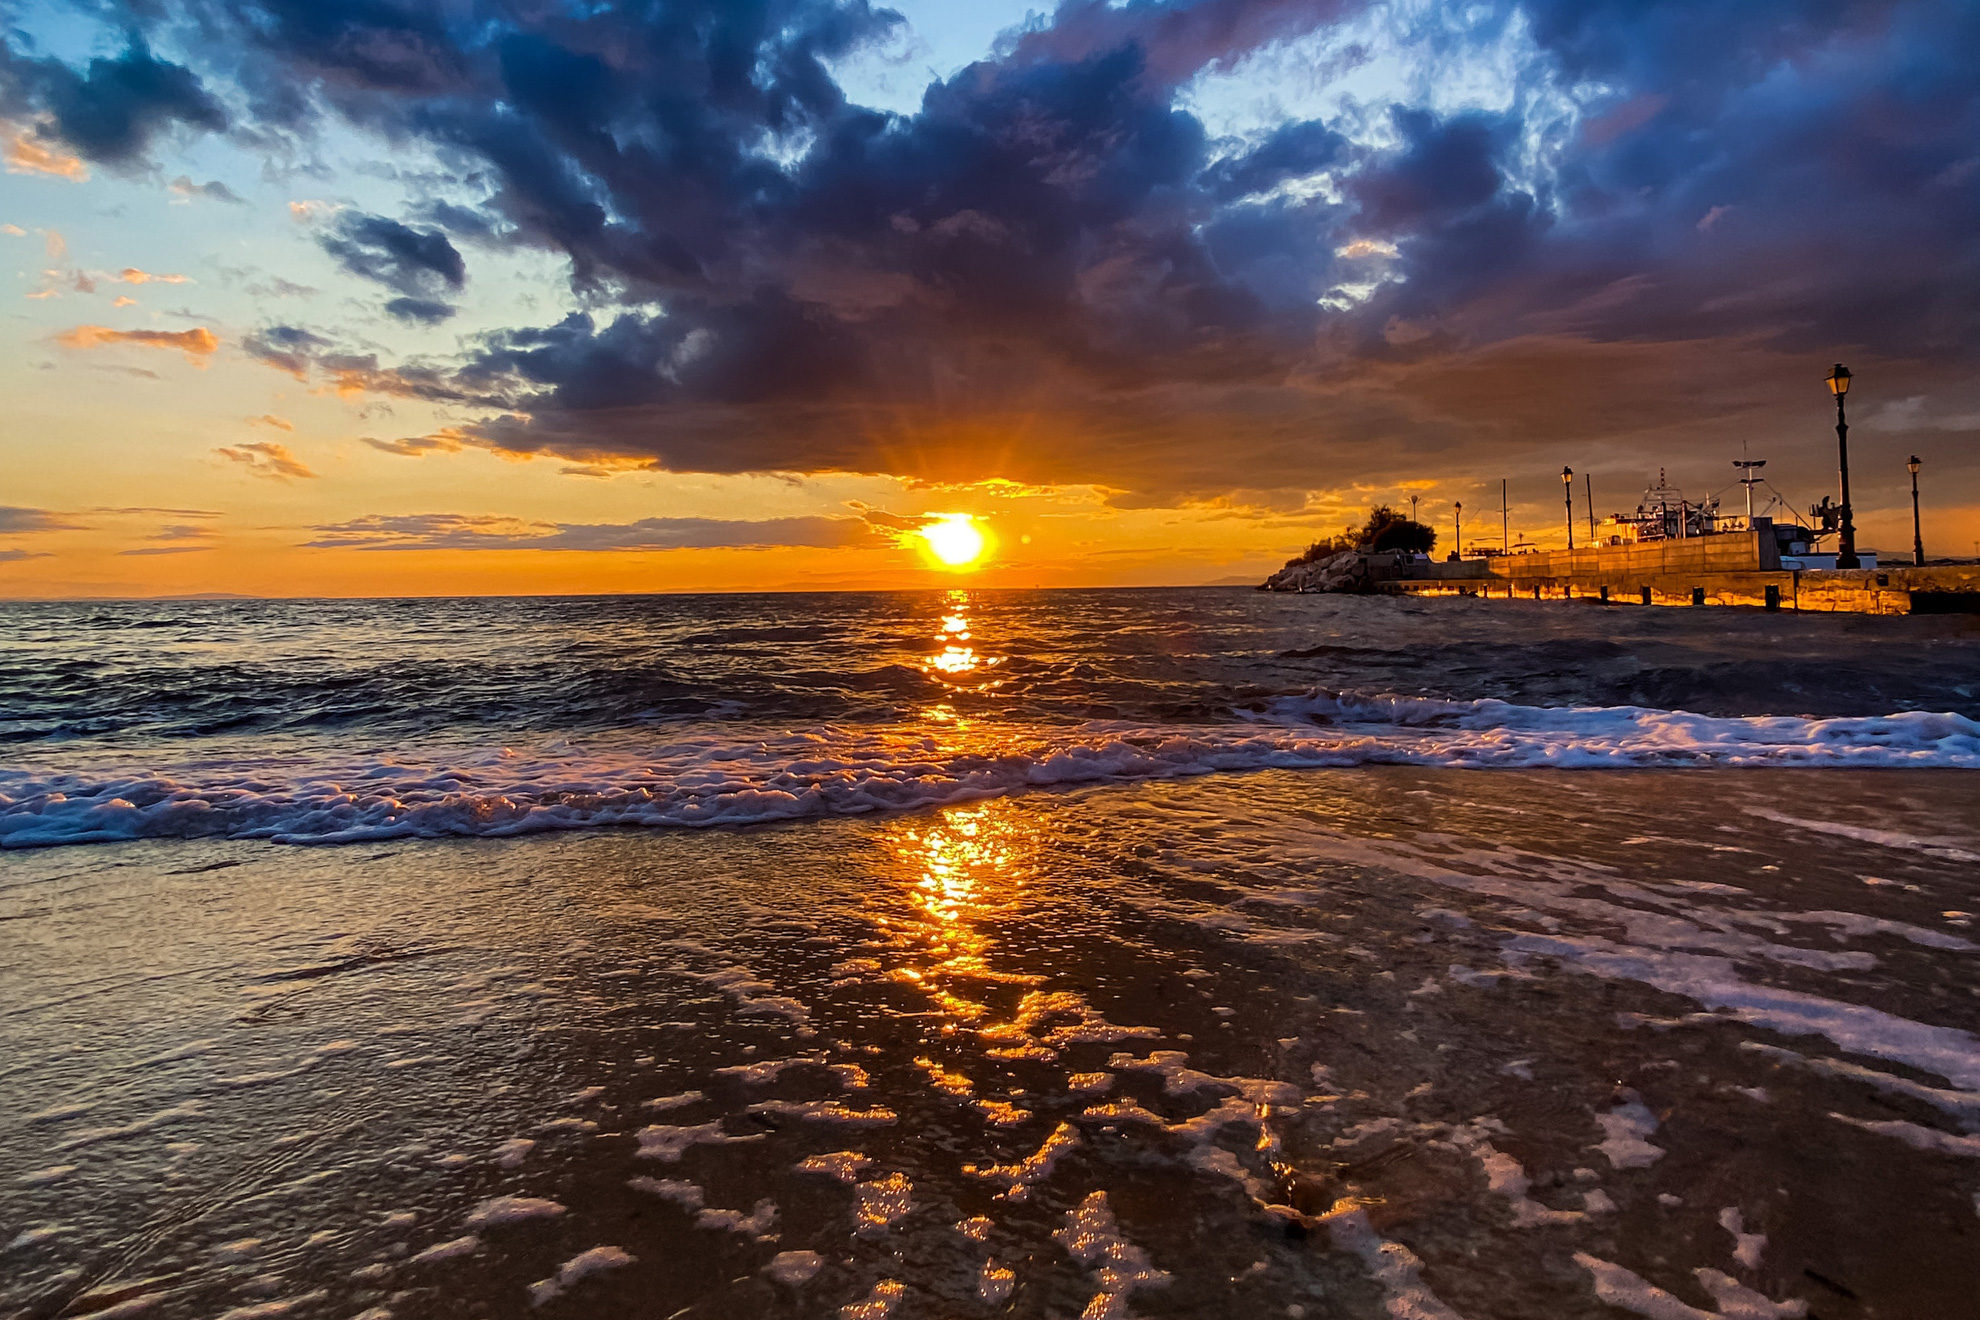 Великден на остров Тасос - Сънсет круиз (Круиз по залез), Остров Тасос, Гърция - Sunset cruise, Thasos island, Greece